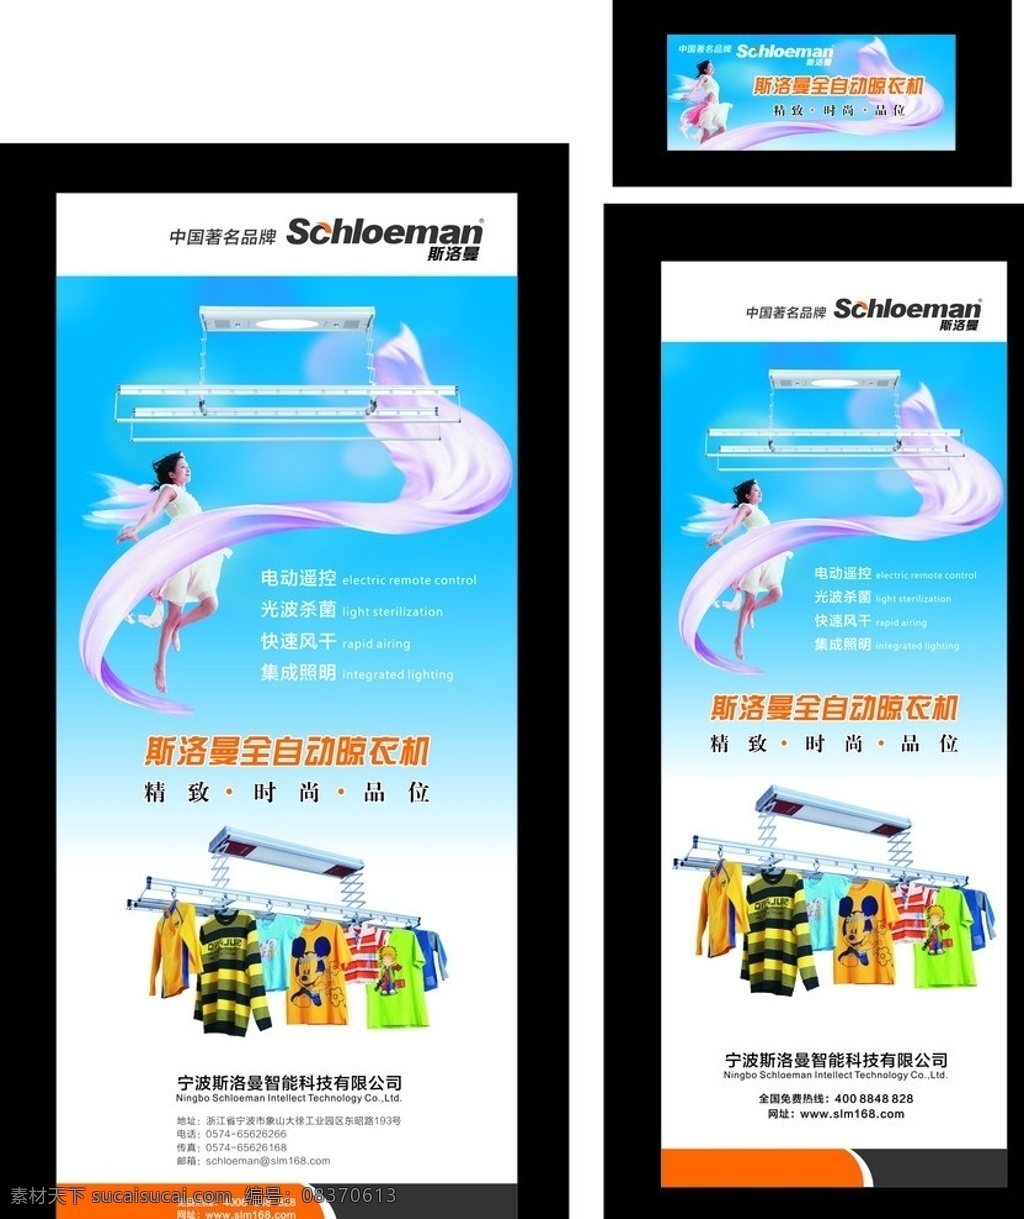 斯洛曼 全自动 晾 衣 机 自动晾衣机 斯洛曼标志 中国名牌 美女 舞动 飘带 自动 衣架 广告 海报 展架模板 天空蓝 时尚元素 展板模板 矢量